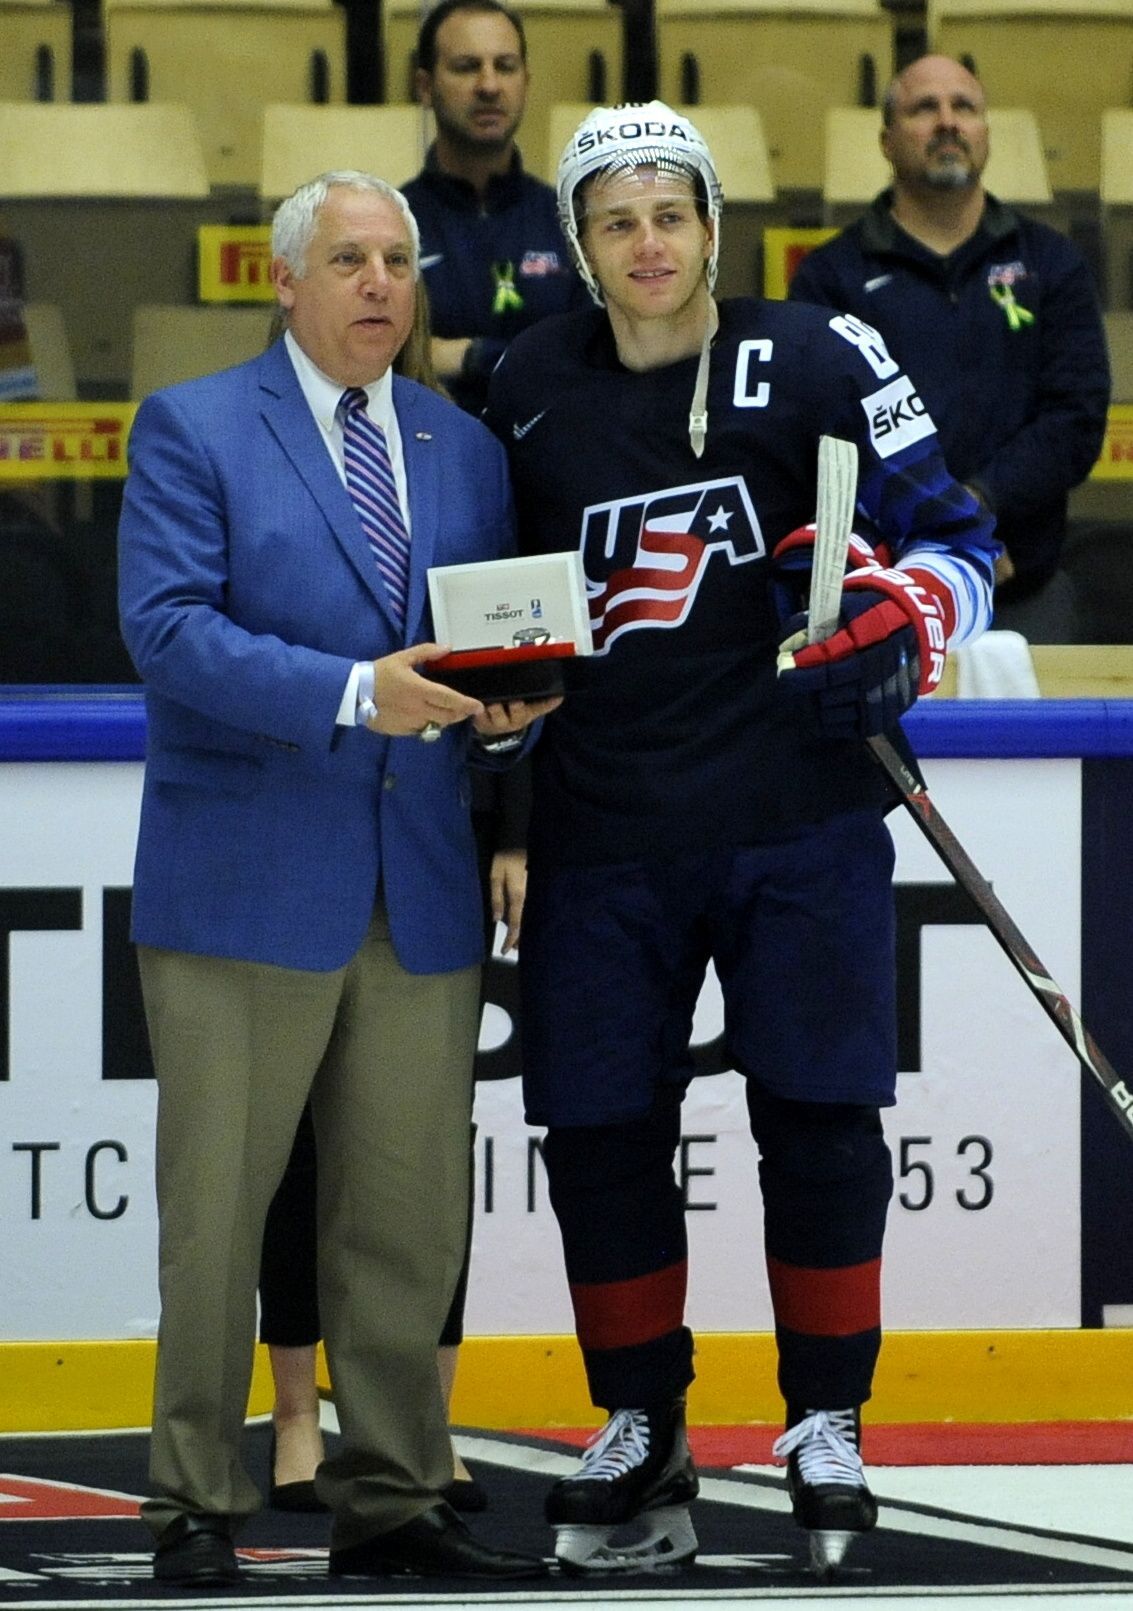 MS 2018, USA-Česko: Patrick Kane byl vyhlášen nejlepším hráčem zápasu za USA